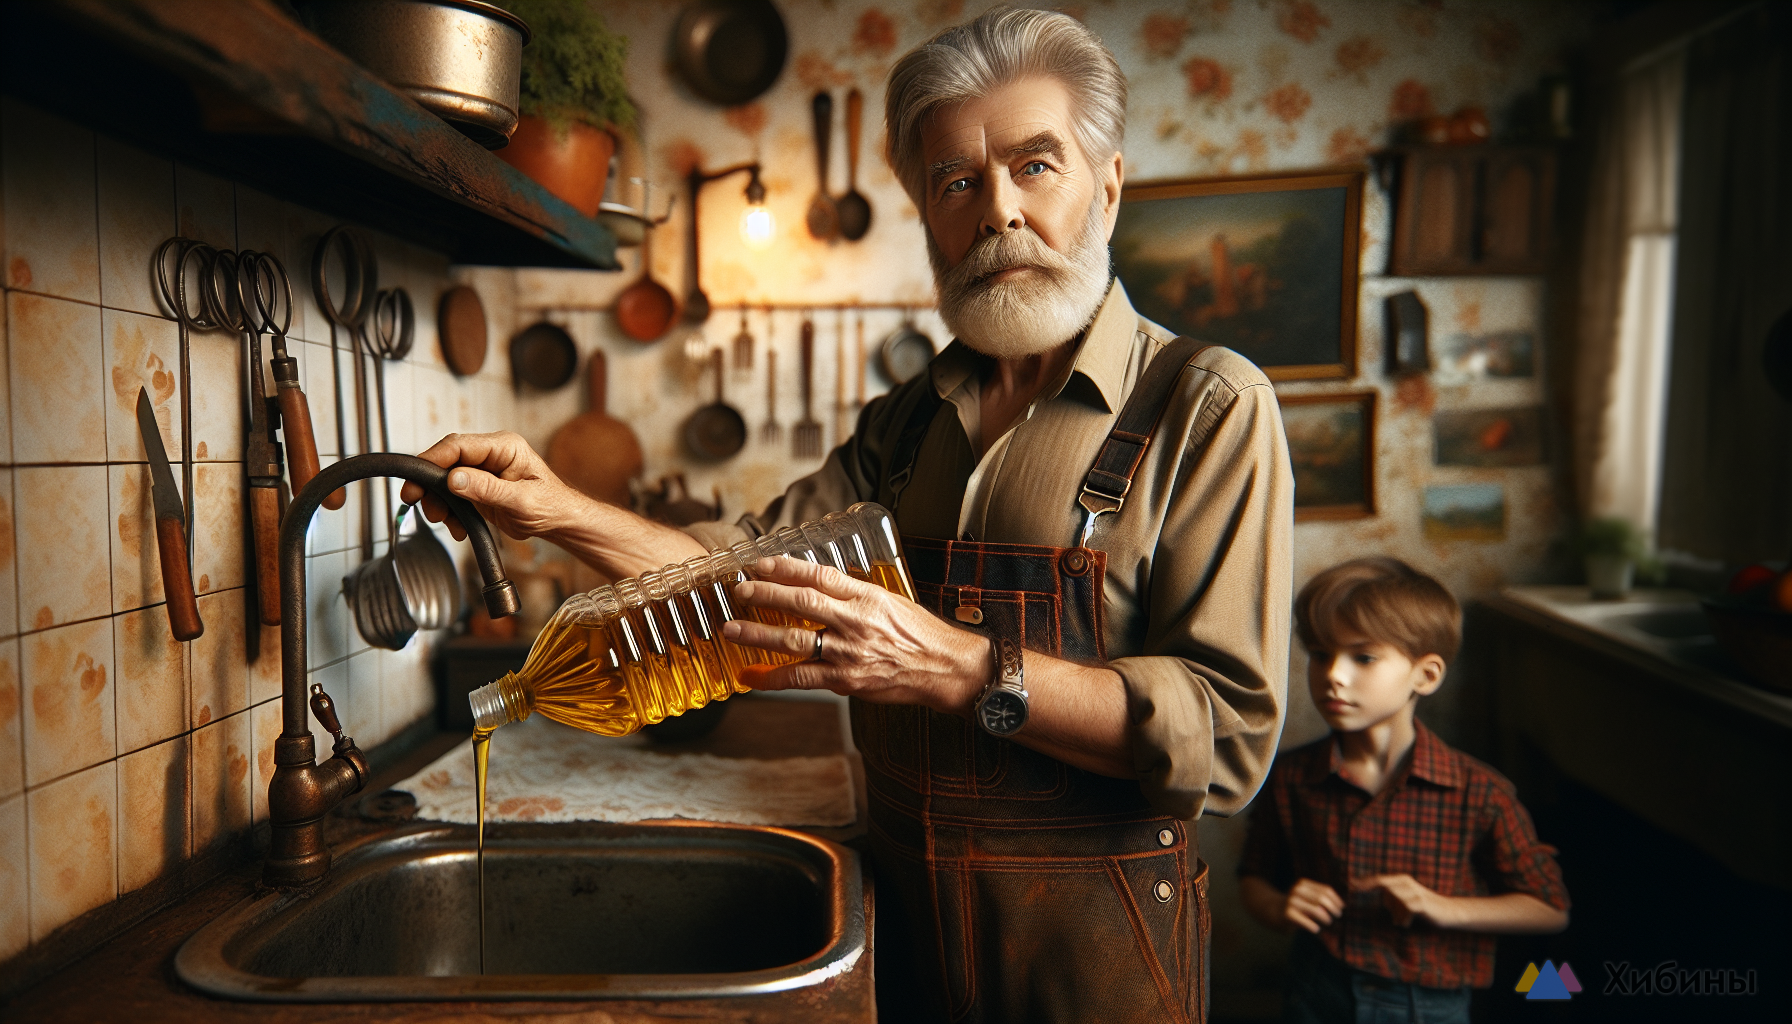 Дед-сантехник научил лить подсолнечное масло в раковину: Делаю так перед уходом из дома, и душа спокойна — невероятный способ